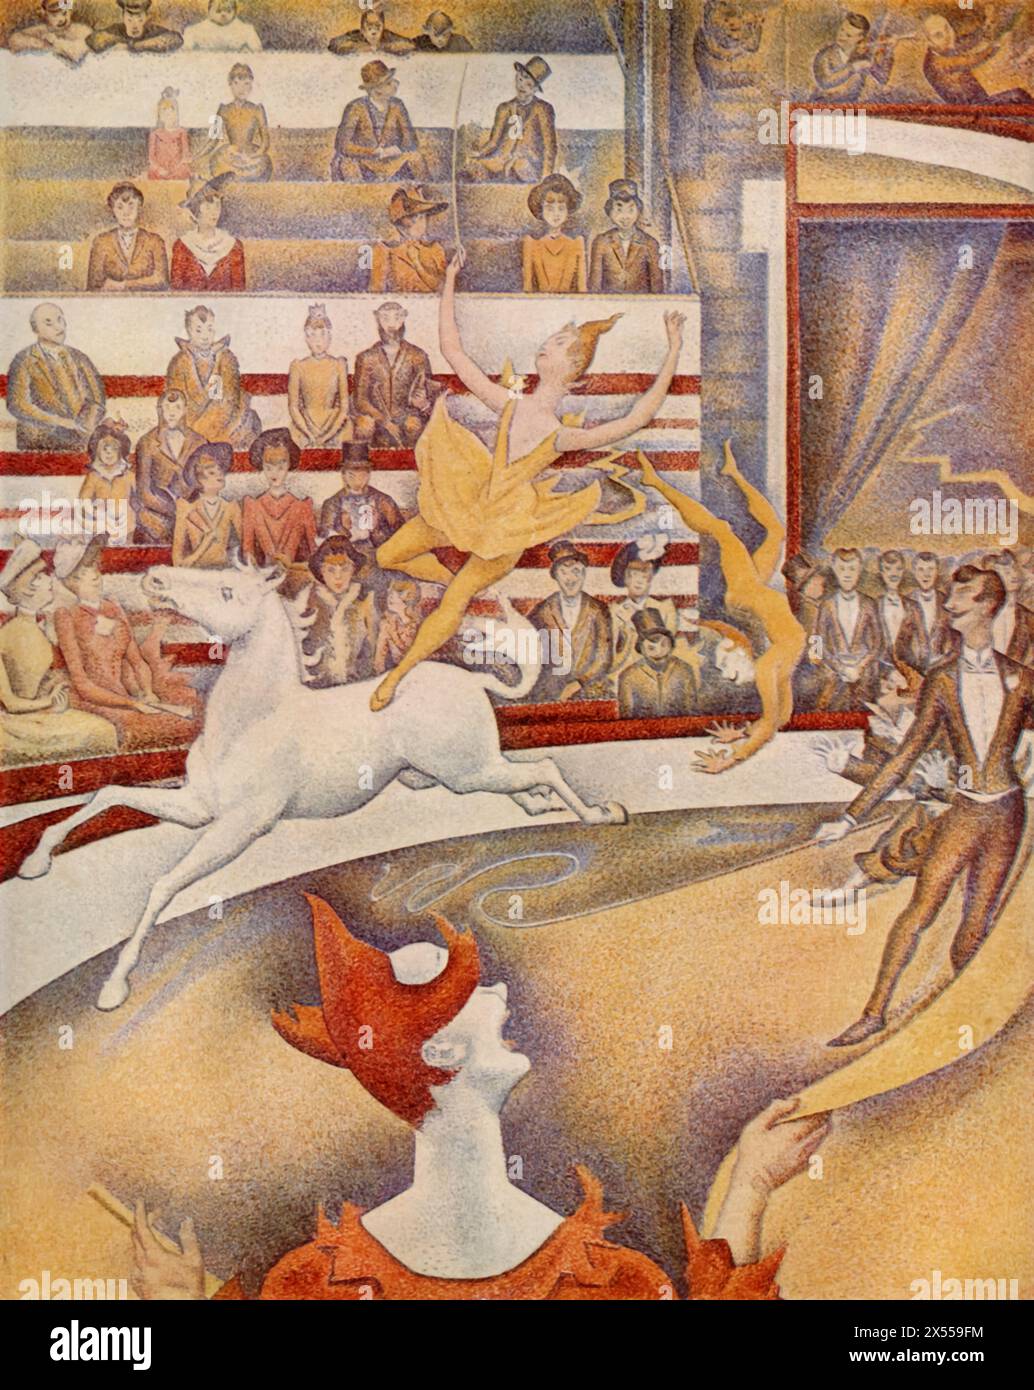 Il Circo di Georges Seurat, dipinto nel 1891, ospitato al Museo del Louvre, Parigi, Francia. Questo dipinto dinamico cattura una vivace scena circense, con artisti in azione. Seurat, noto per la sua tecnica pionieristica del puntinismo, applica piccoli punti di colore distinti che si fondono visivamente per creare scene vivide e luminose. Foto Stock